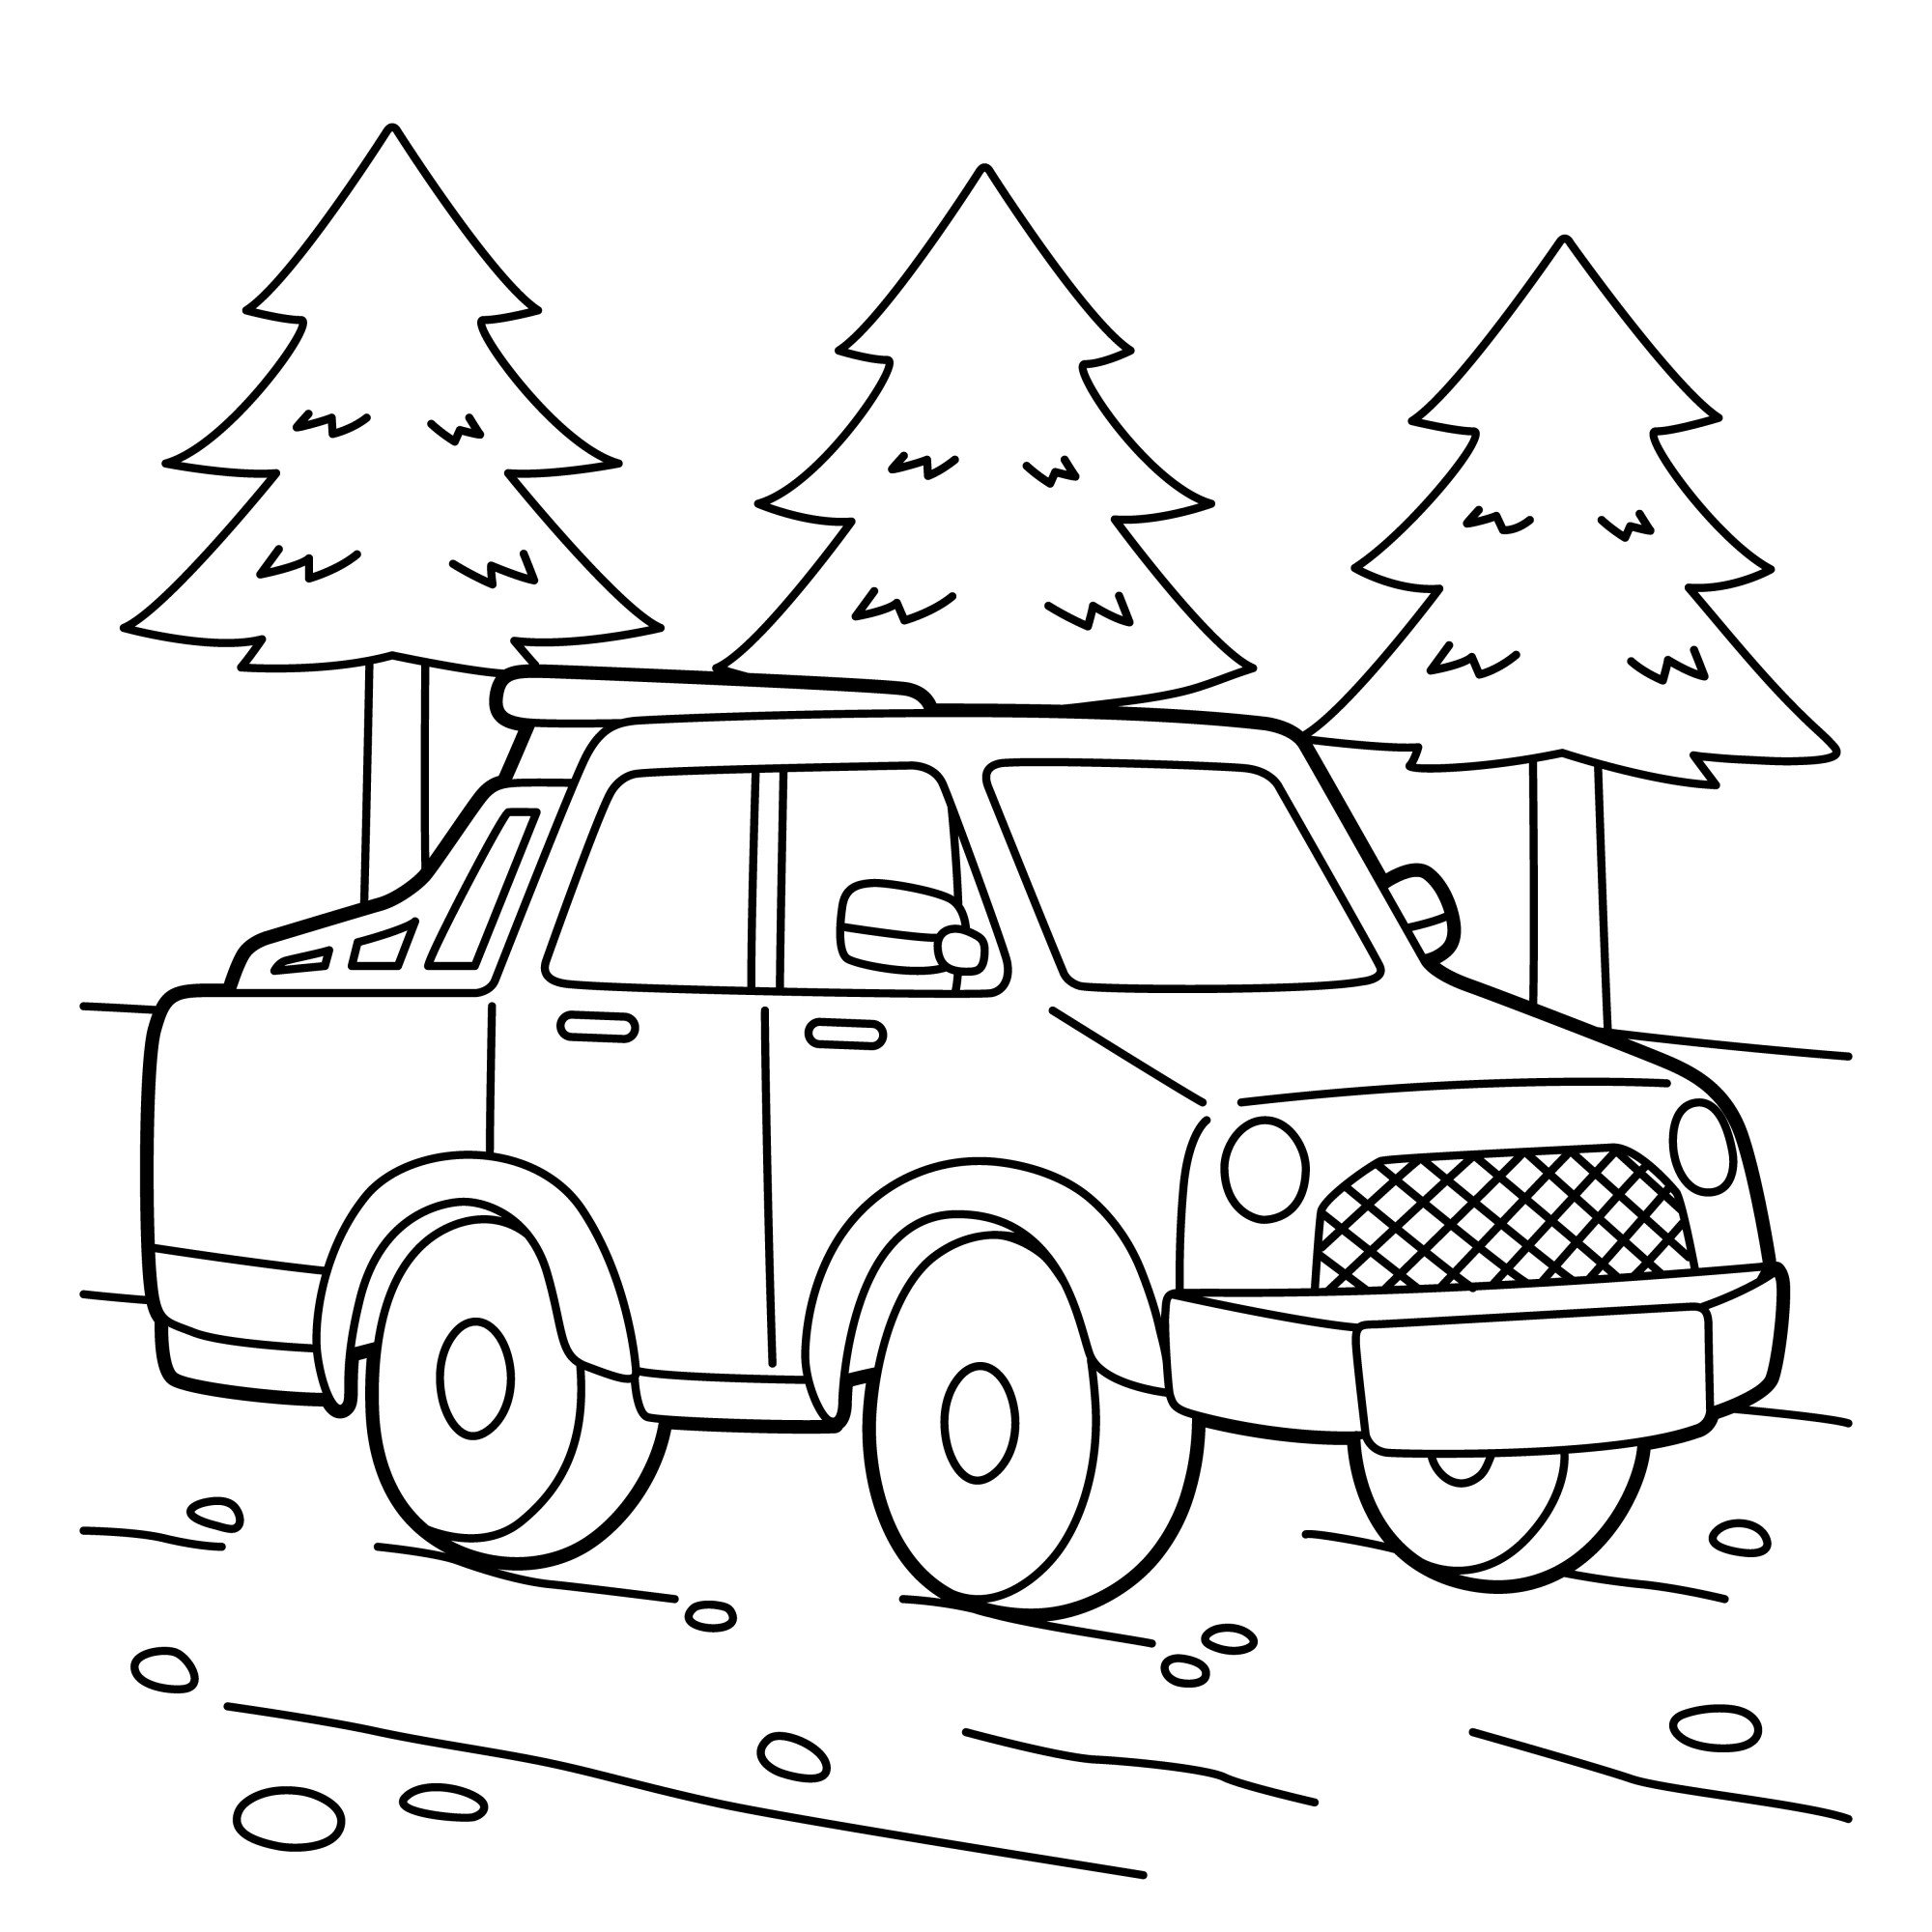 Раскраска для детей: автомобиль пикап на фоне елок